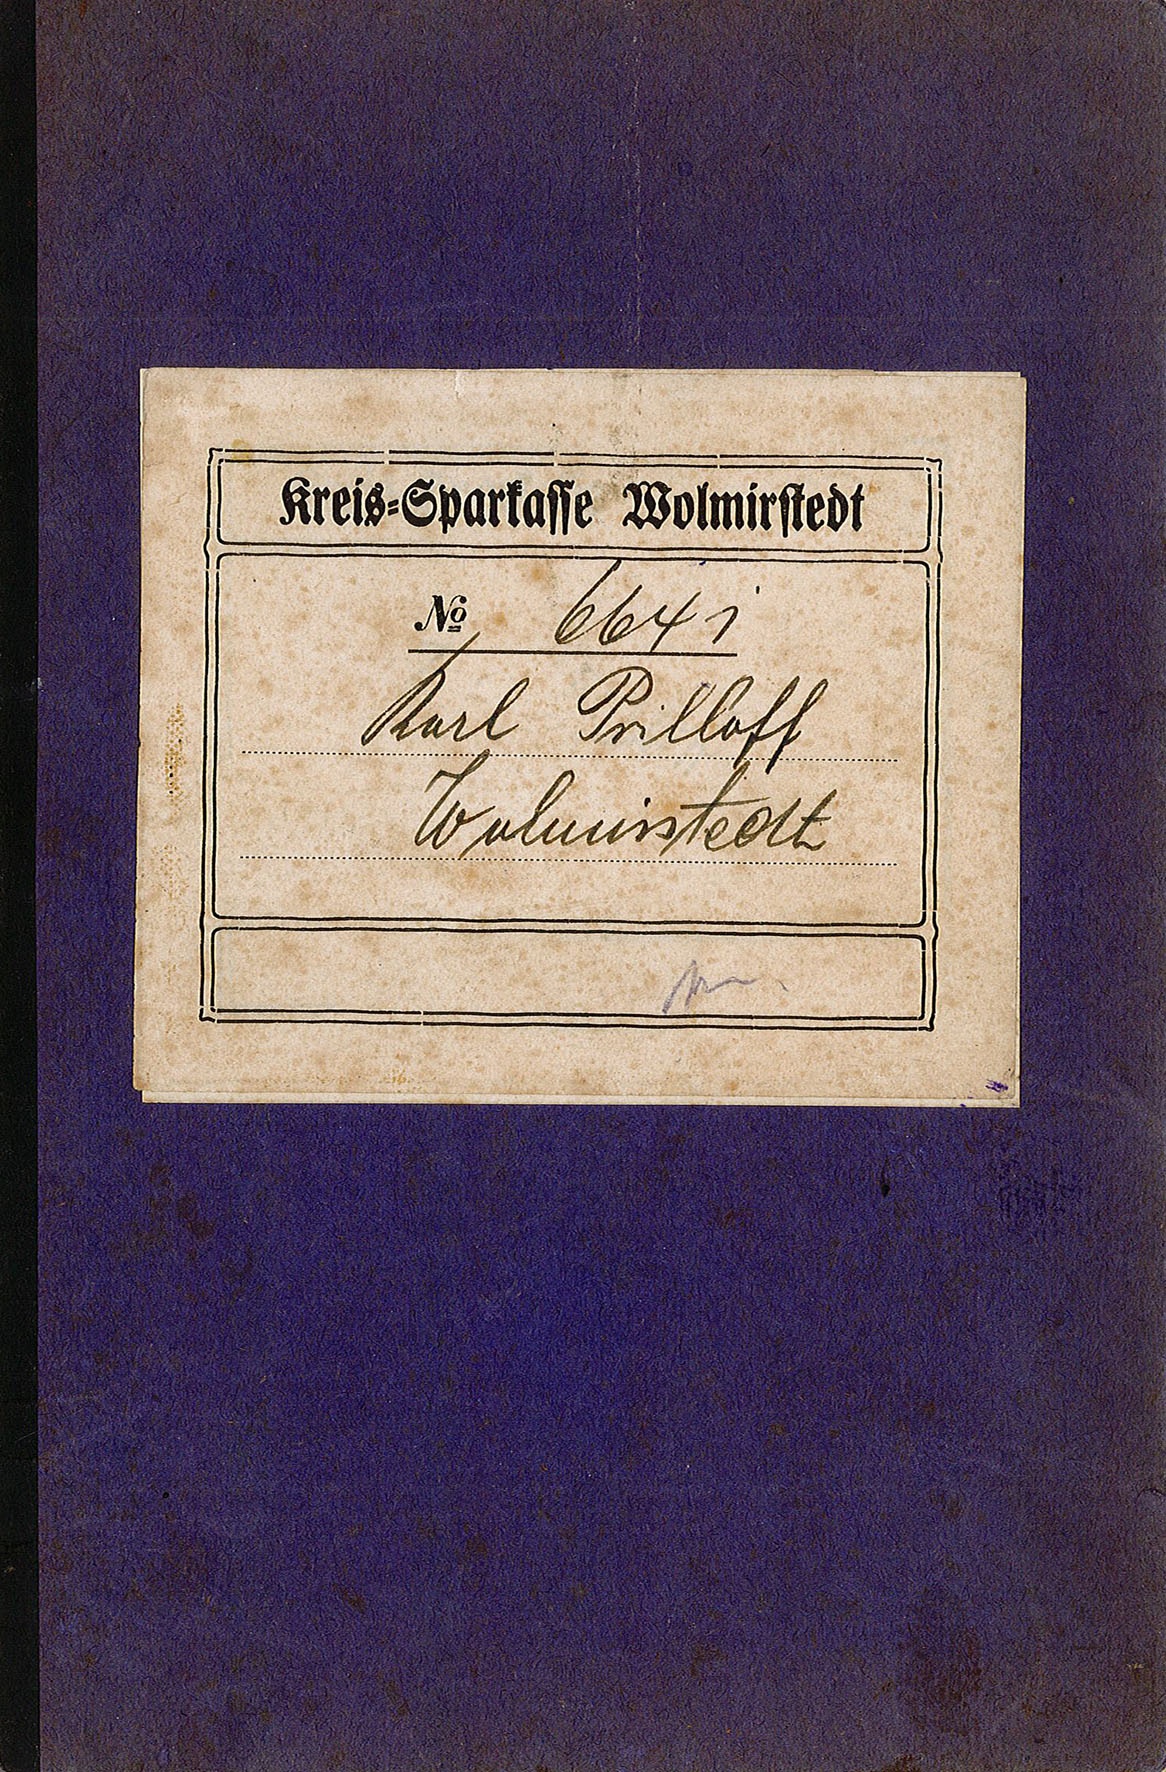 Sparbuch-Nr. 6641 von Karl Prilloff (Museum Wolmirstedt RR-F)